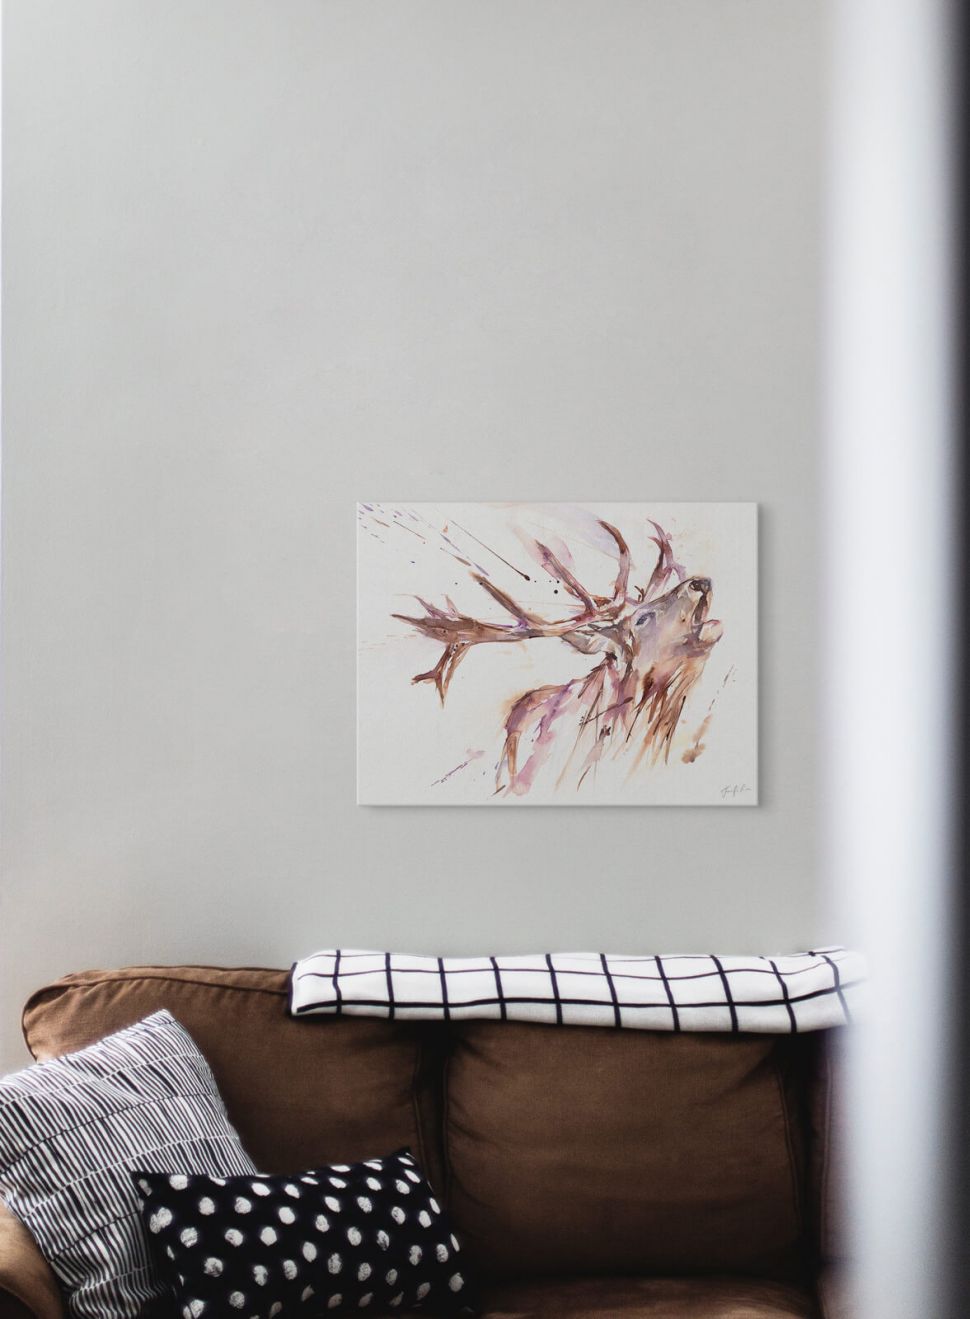 Obraz na płótnie z Jeleniem Roar powieszony nad brązową kanapą